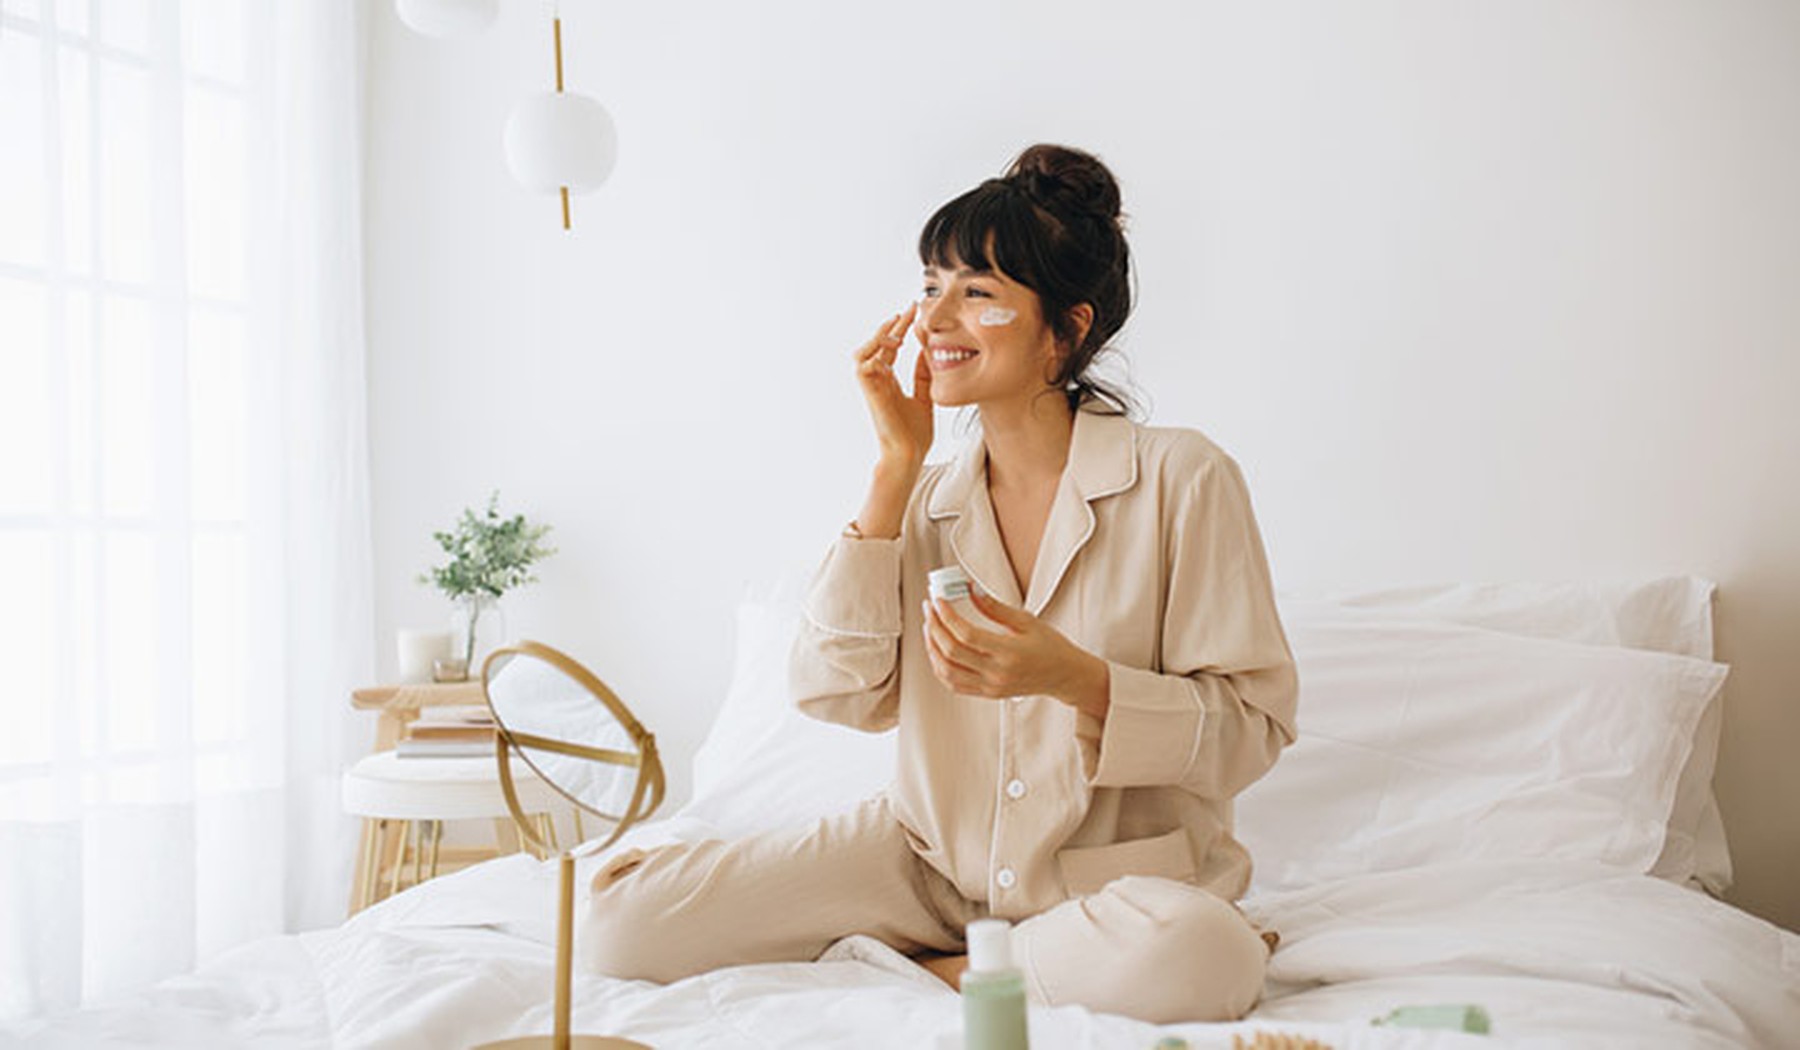 mujer joven sentada en una cama blanca y echándose crema en la cara con un espejo redondo delante